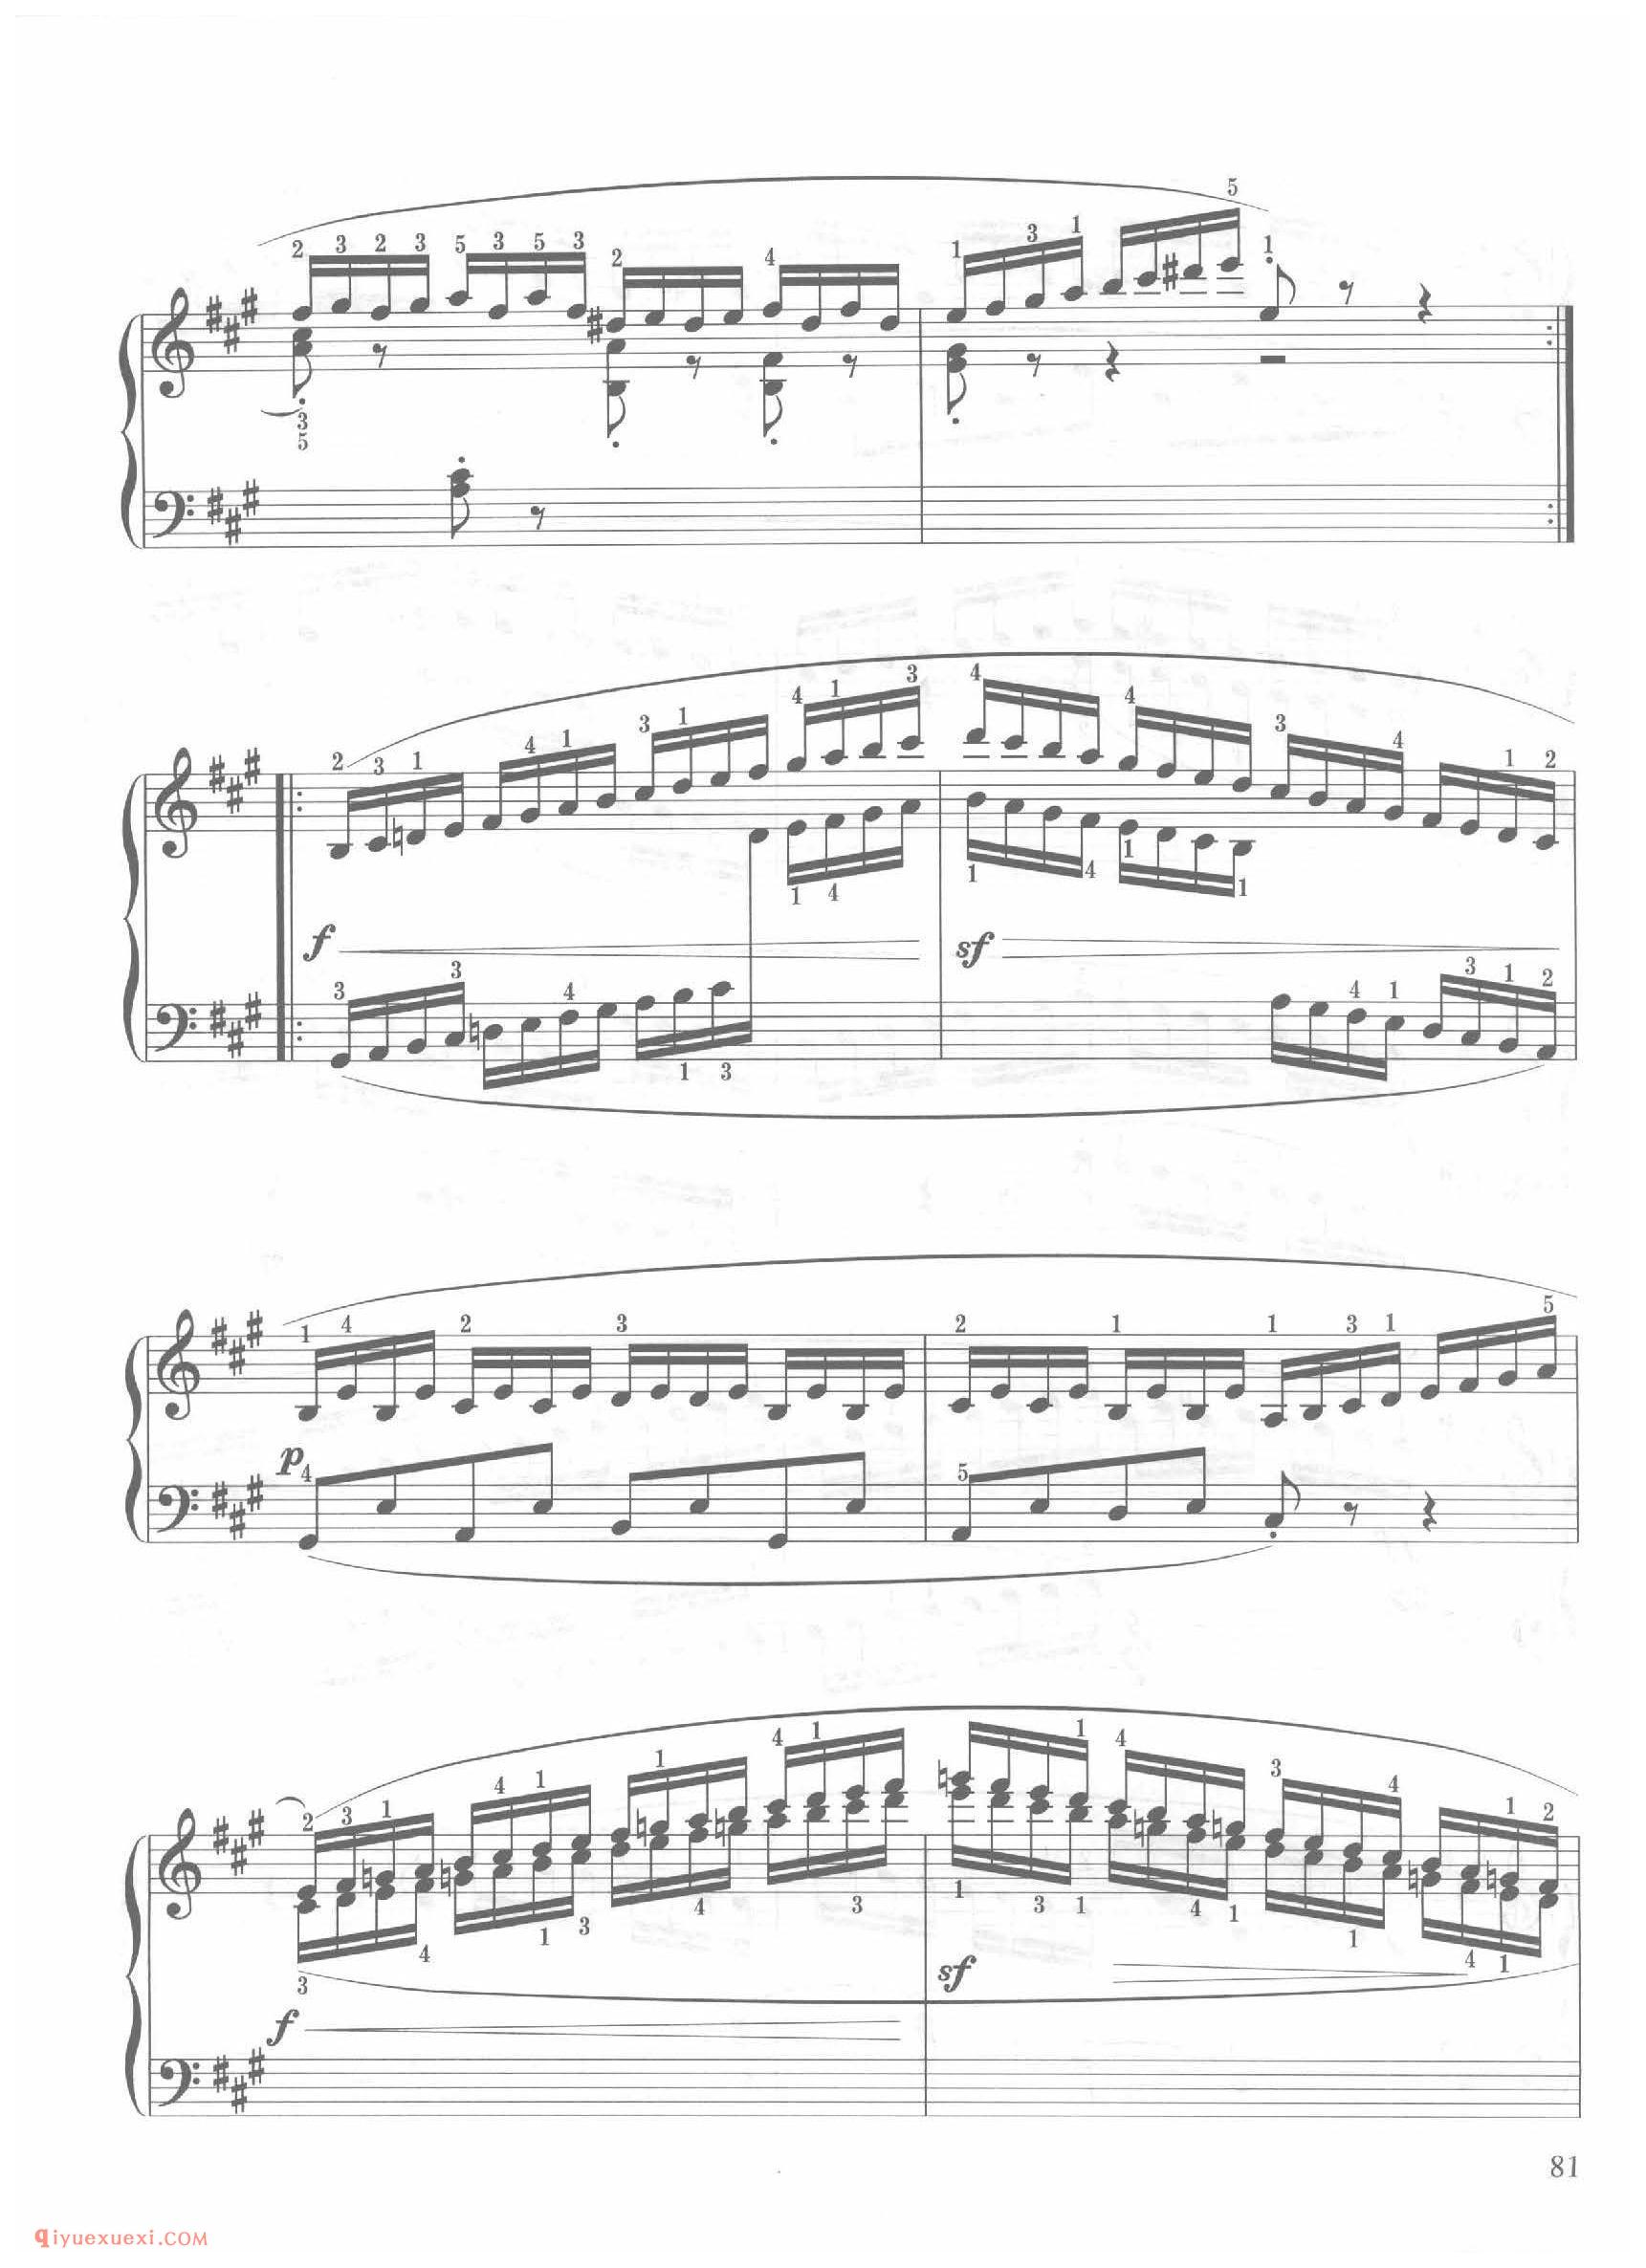 第23条A大调舒适的快板（Allegro comodo)车尔尼钢琴作品849_常桦讲解 注释